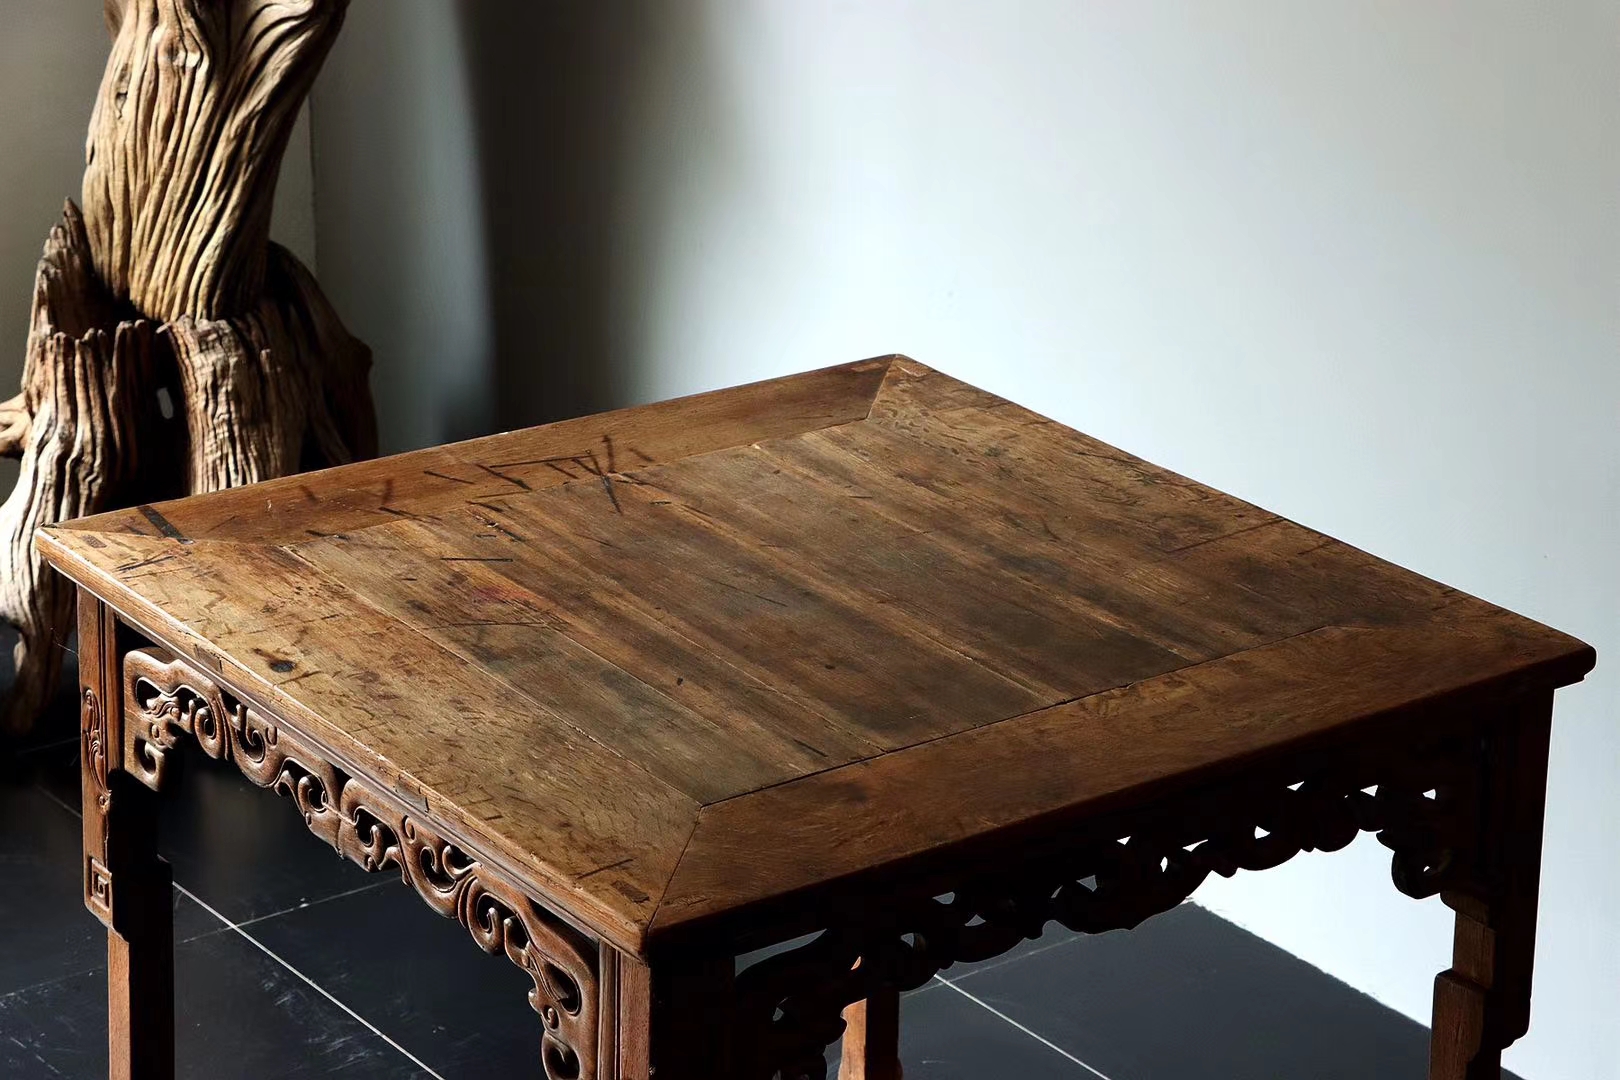 八仙桌是古代最常见的家具,甚至今天仍然有不少地方使用